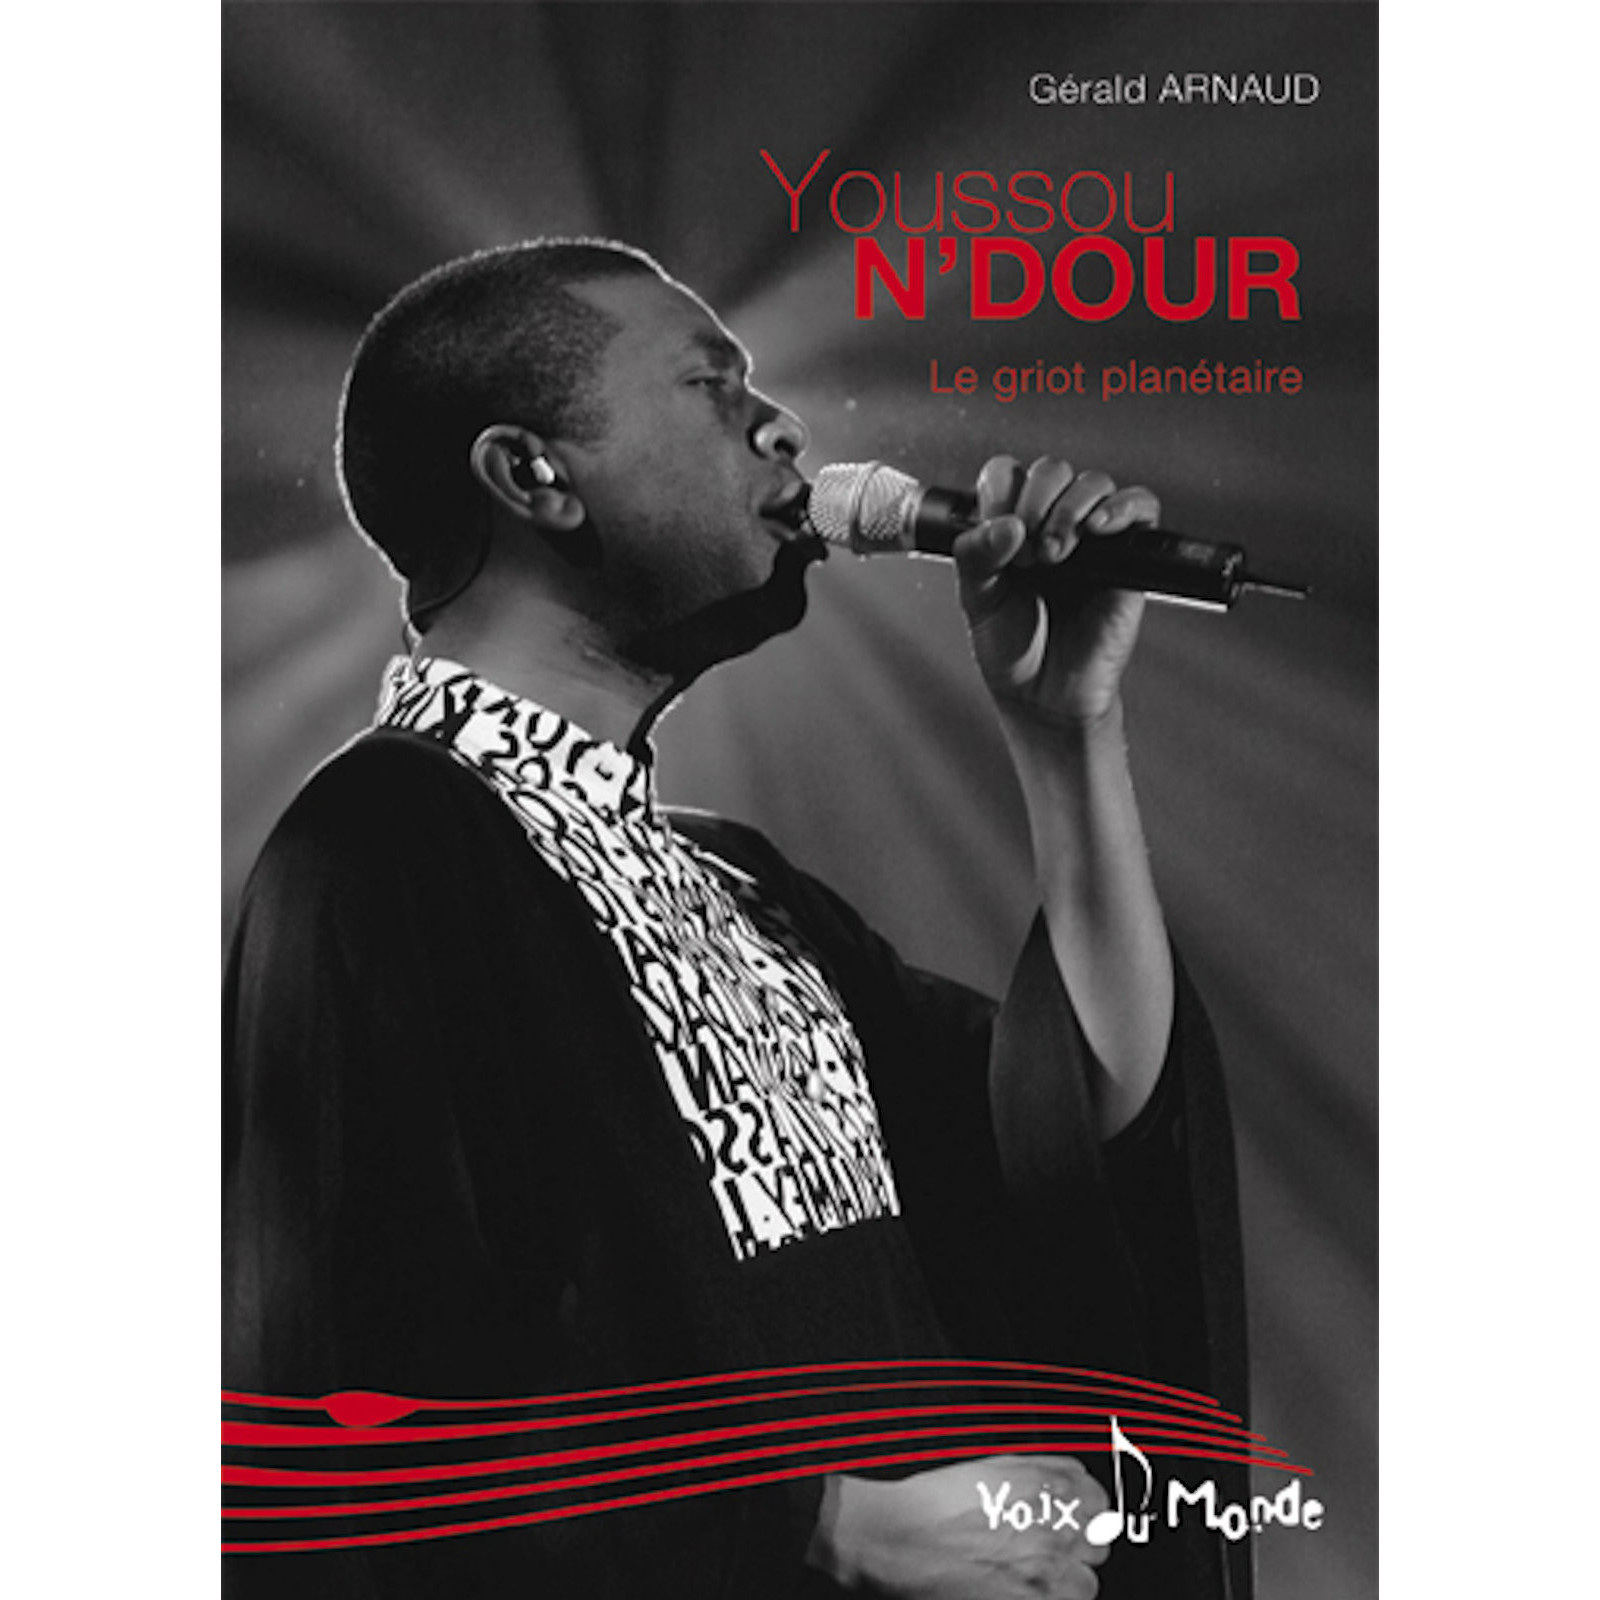 Youssou N’DOUR, le griot planétaire